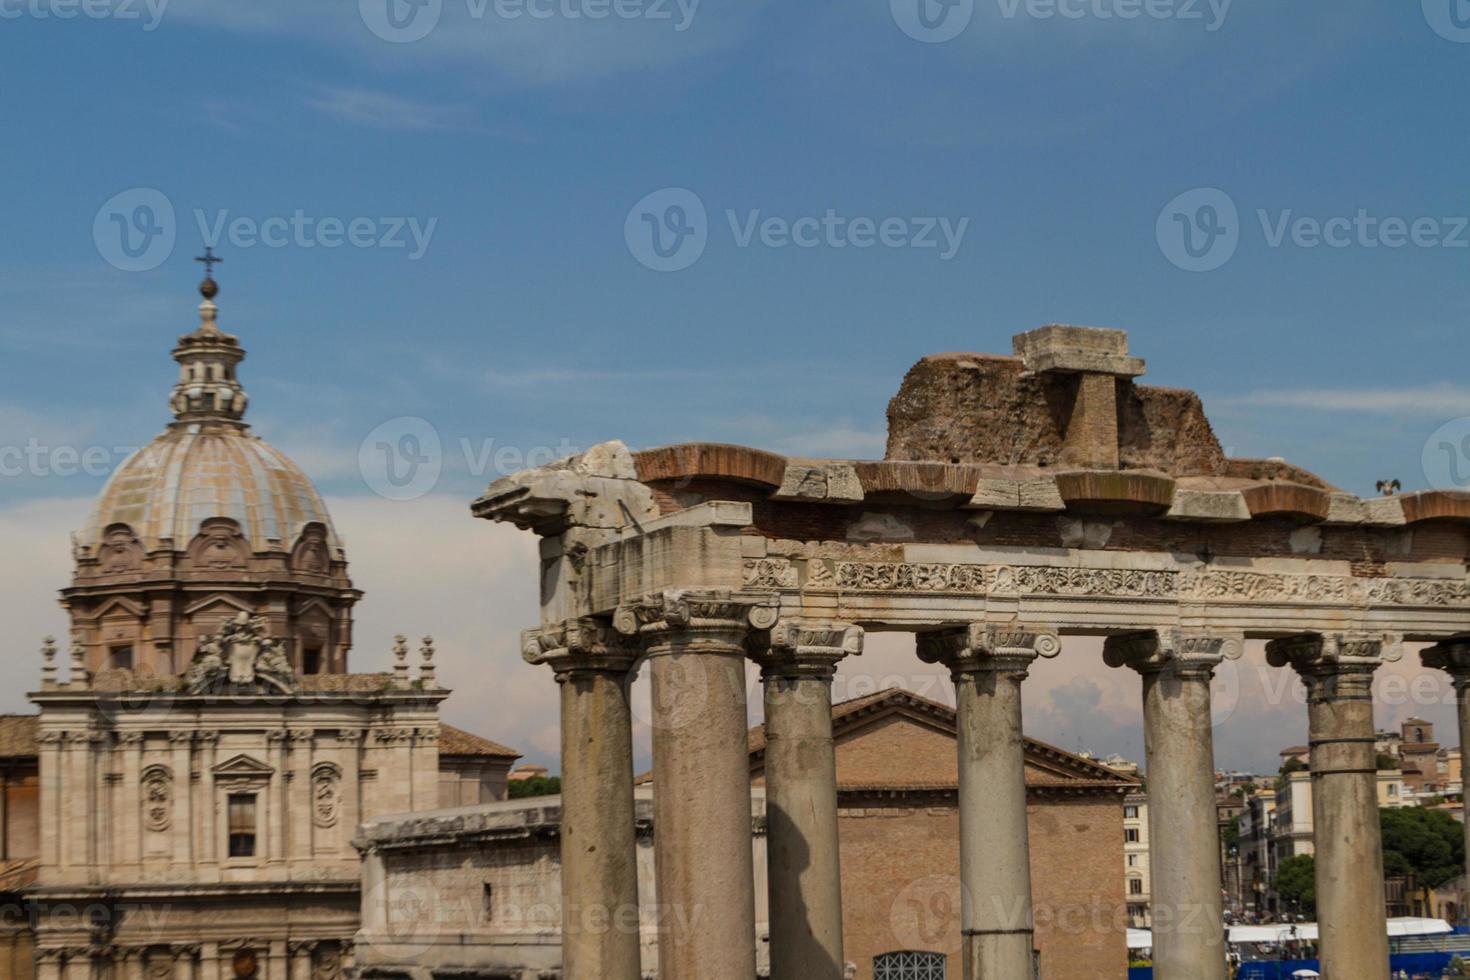 het bouwen van ruïnes en oude zuilen in rome, italië foto